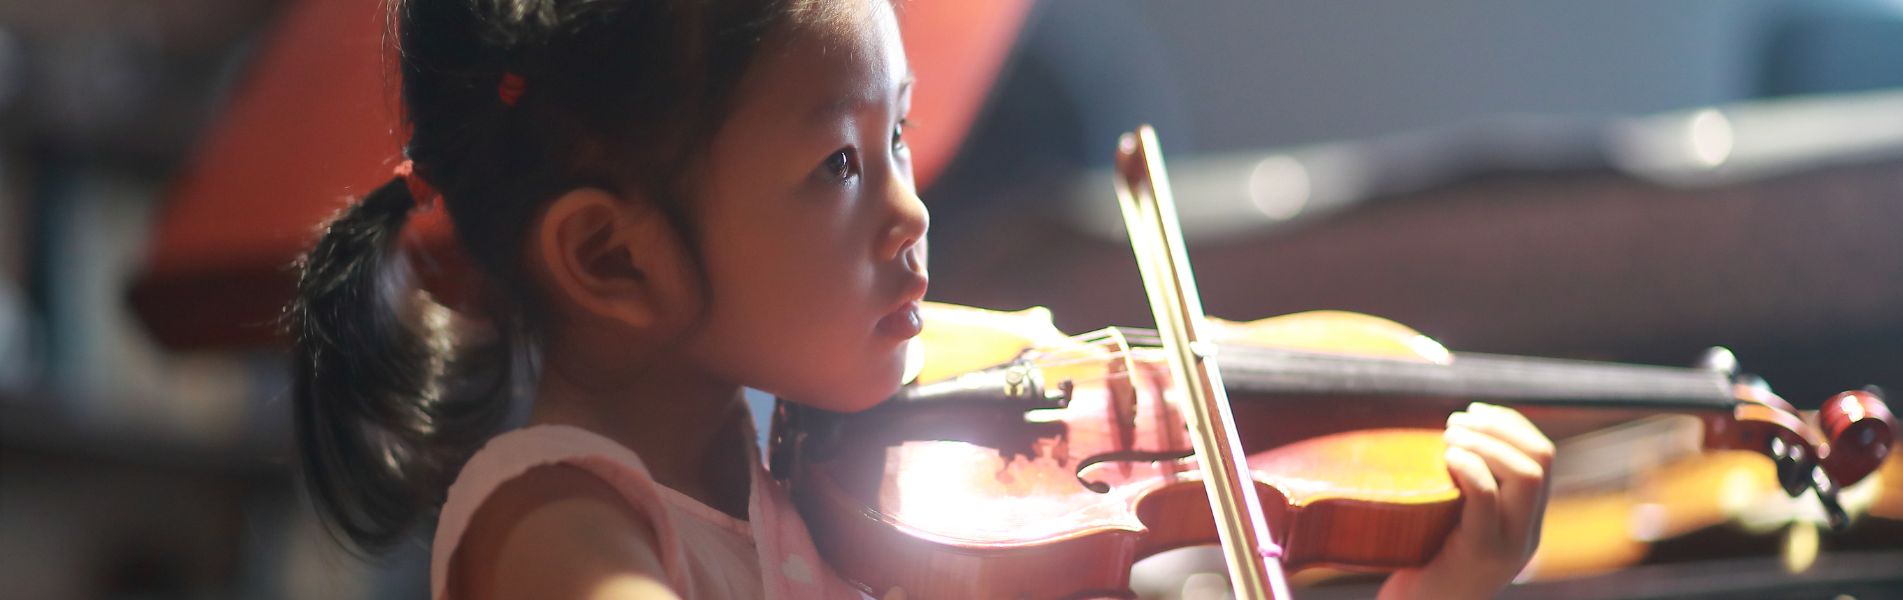 Enfant qui apprend le violon